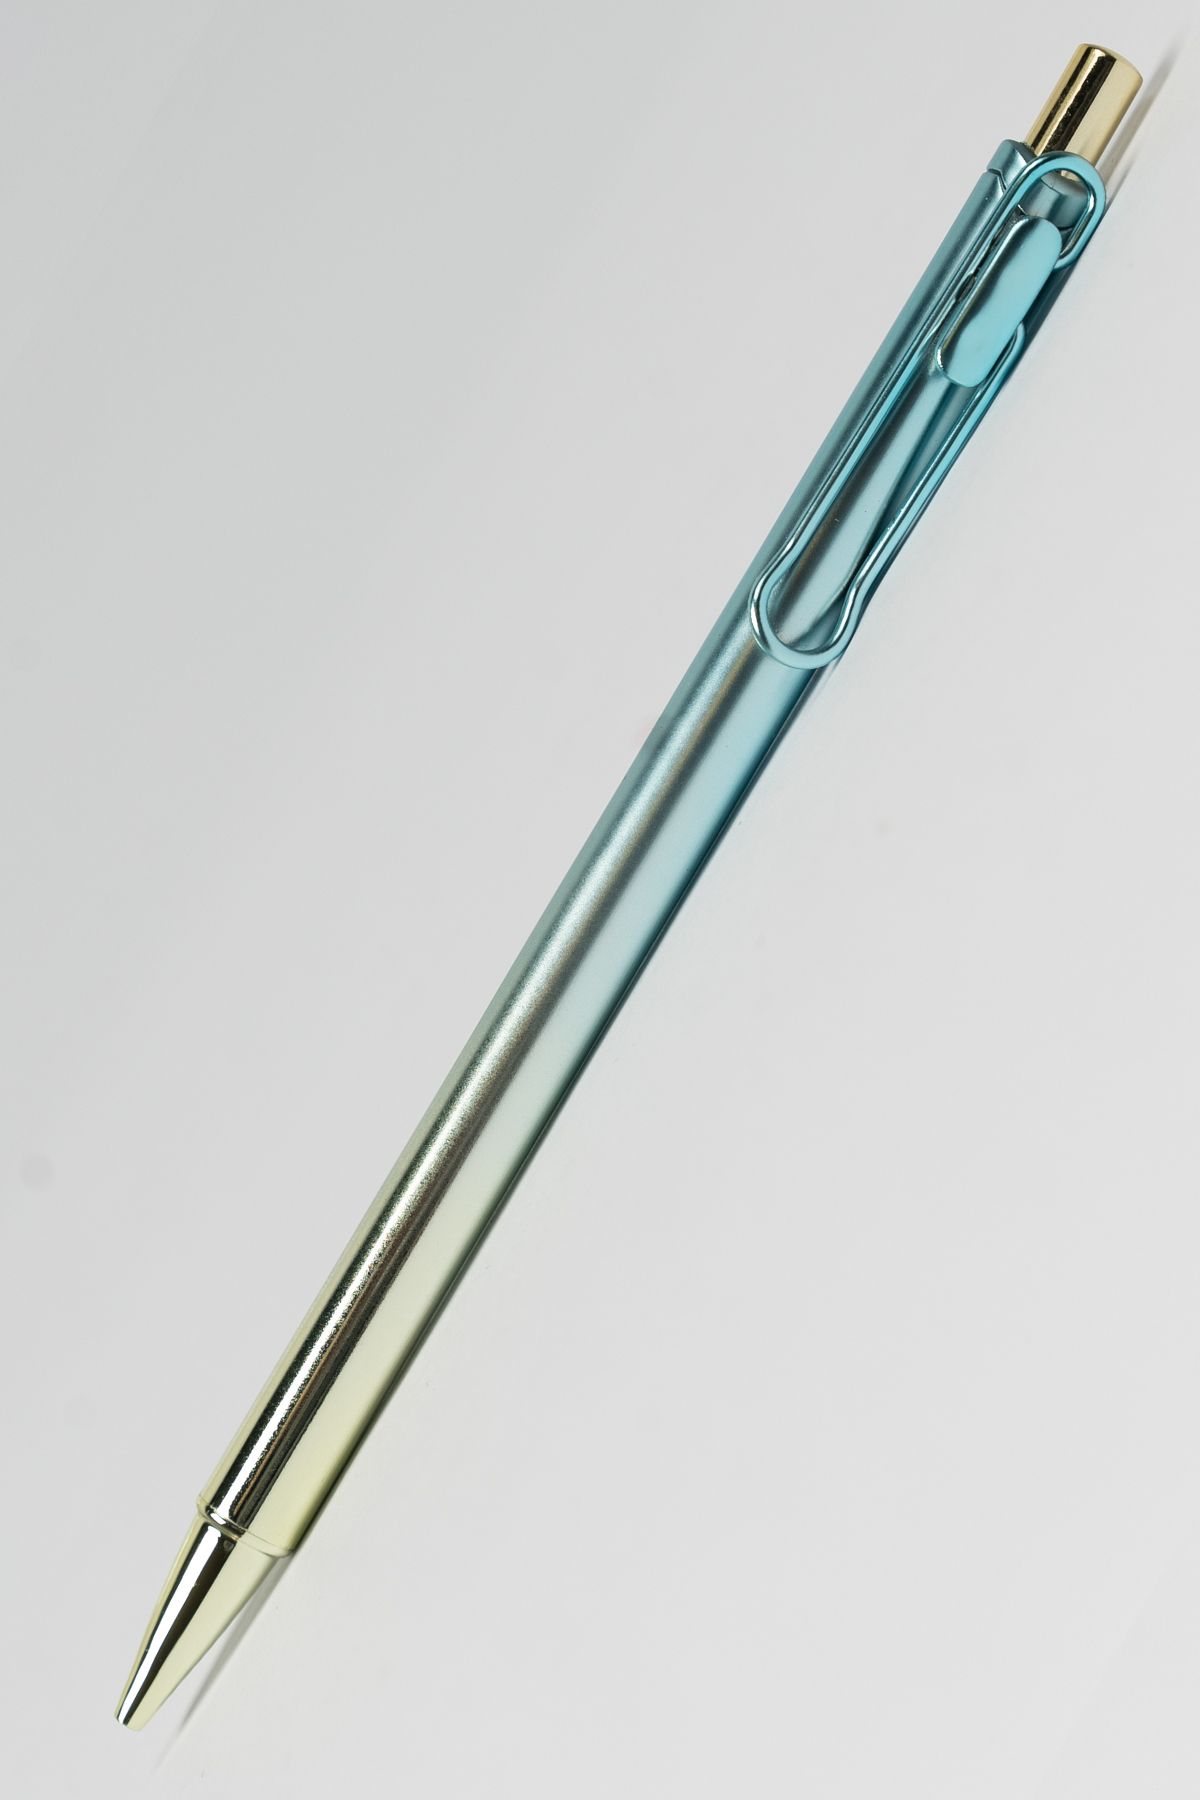 PENEX Metal 2'li Set Uçlu Kalem 0.7 mm